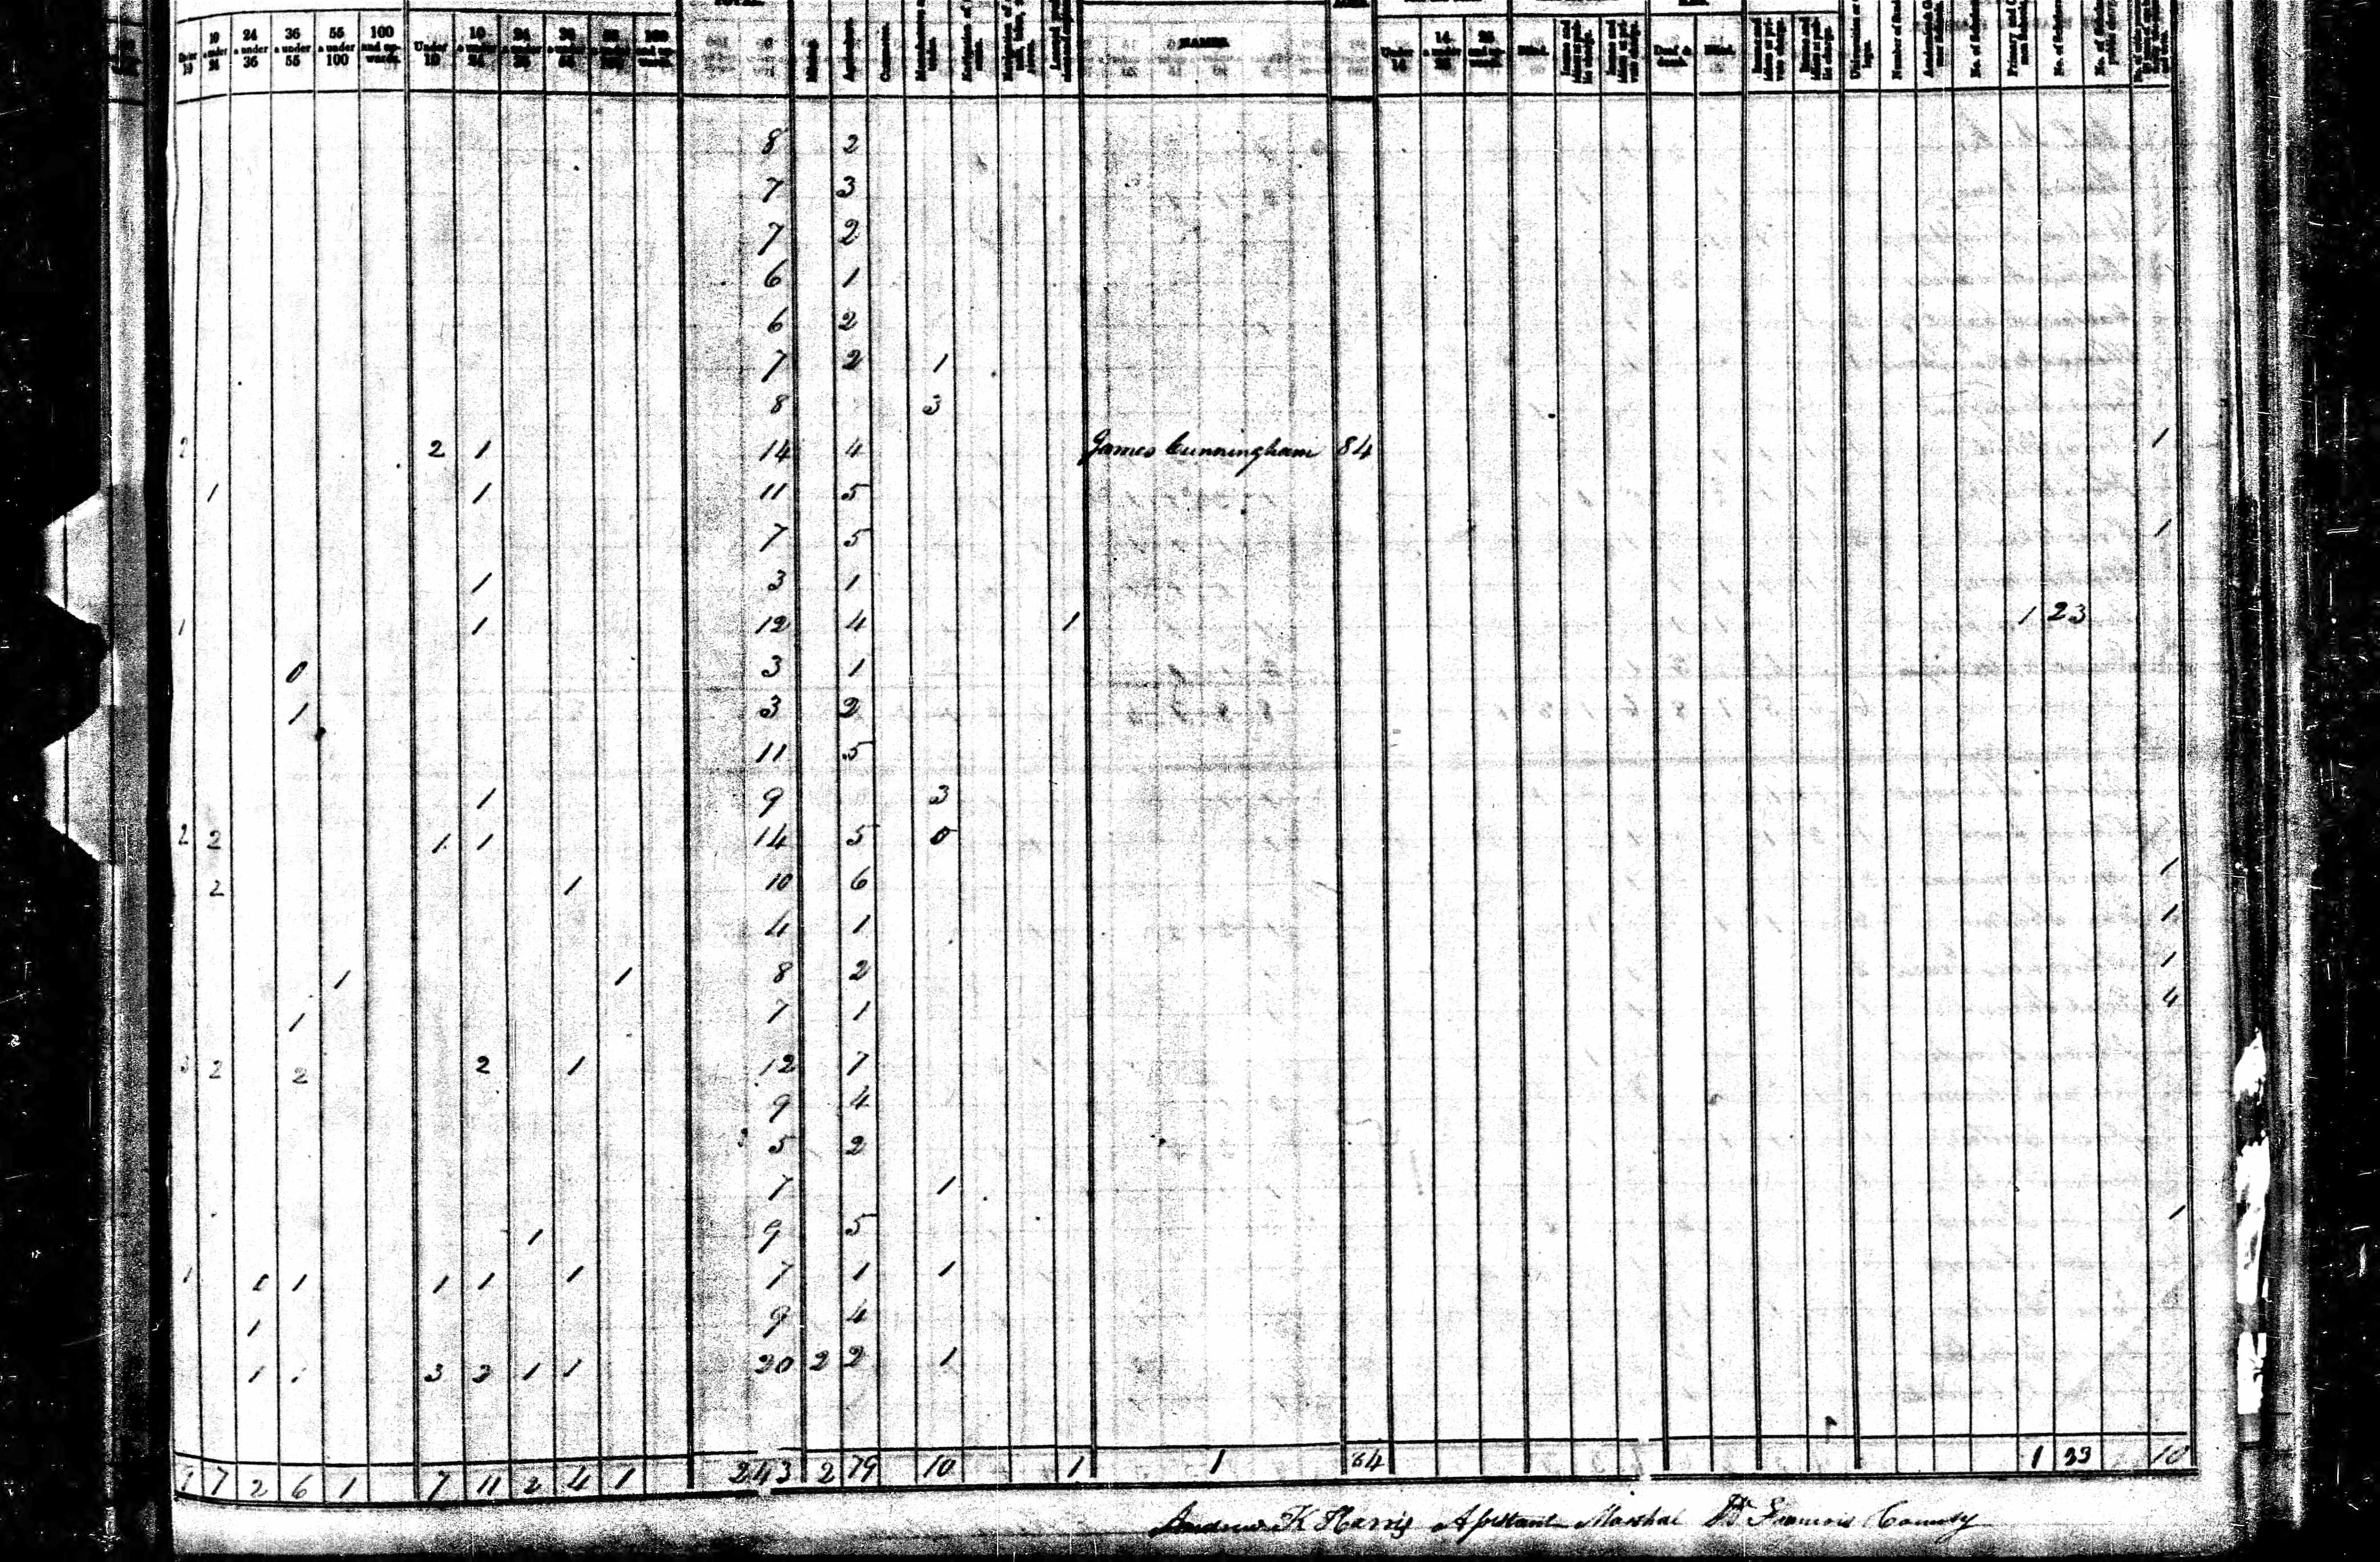 1840 Census, Saint Francois township, St. Francois county, Missouri